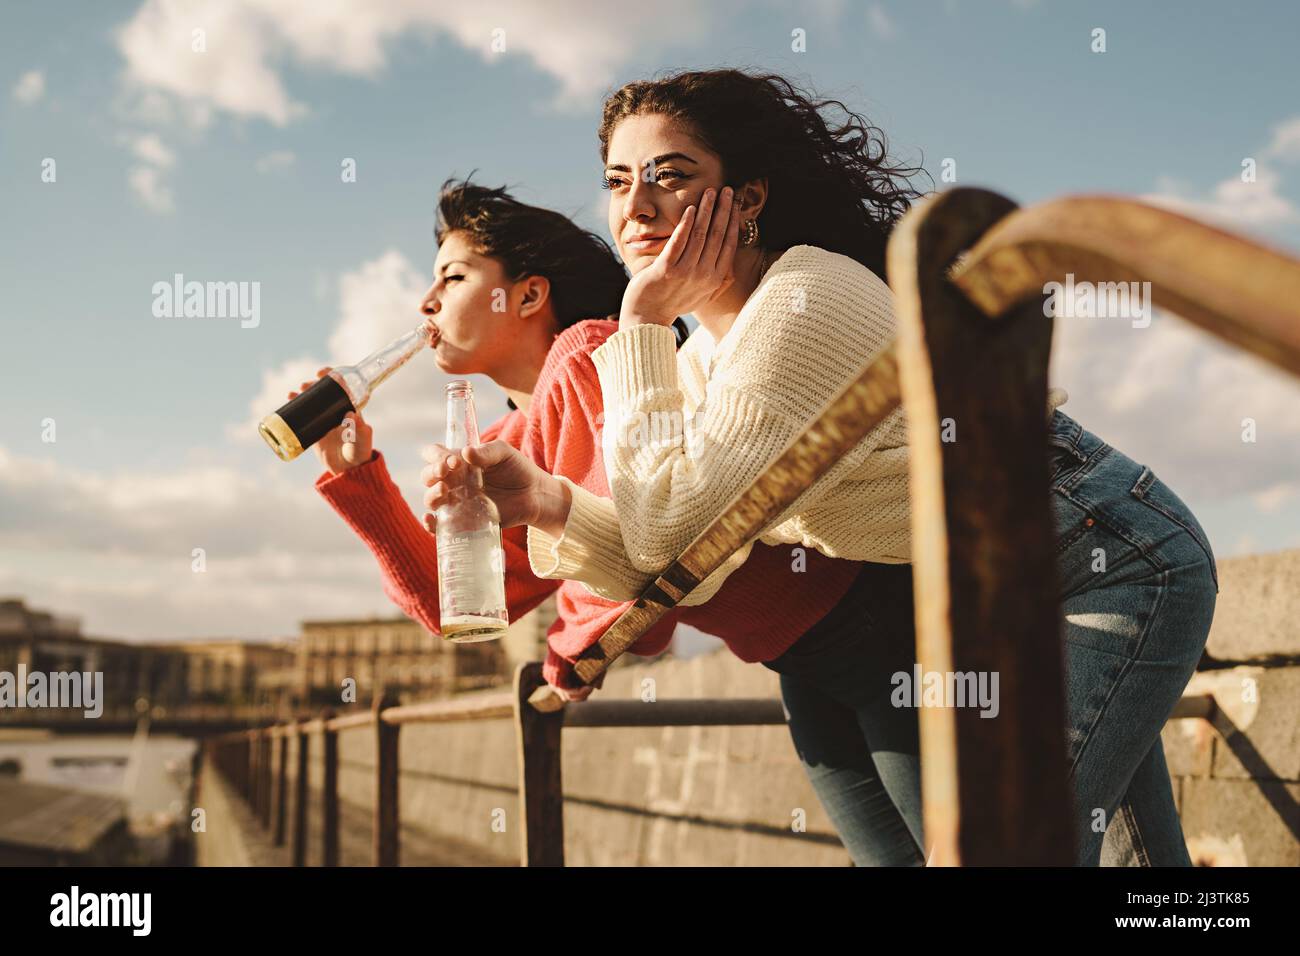 Die besten Freunde trinken Bier im Freien - zwei junge Frauen, die ihre Ellbogen an einem Geländer lehnen, trinken Bier und verbringen unbeschwert ihre Zeit mit entspannten Gesprächen Stockfoto